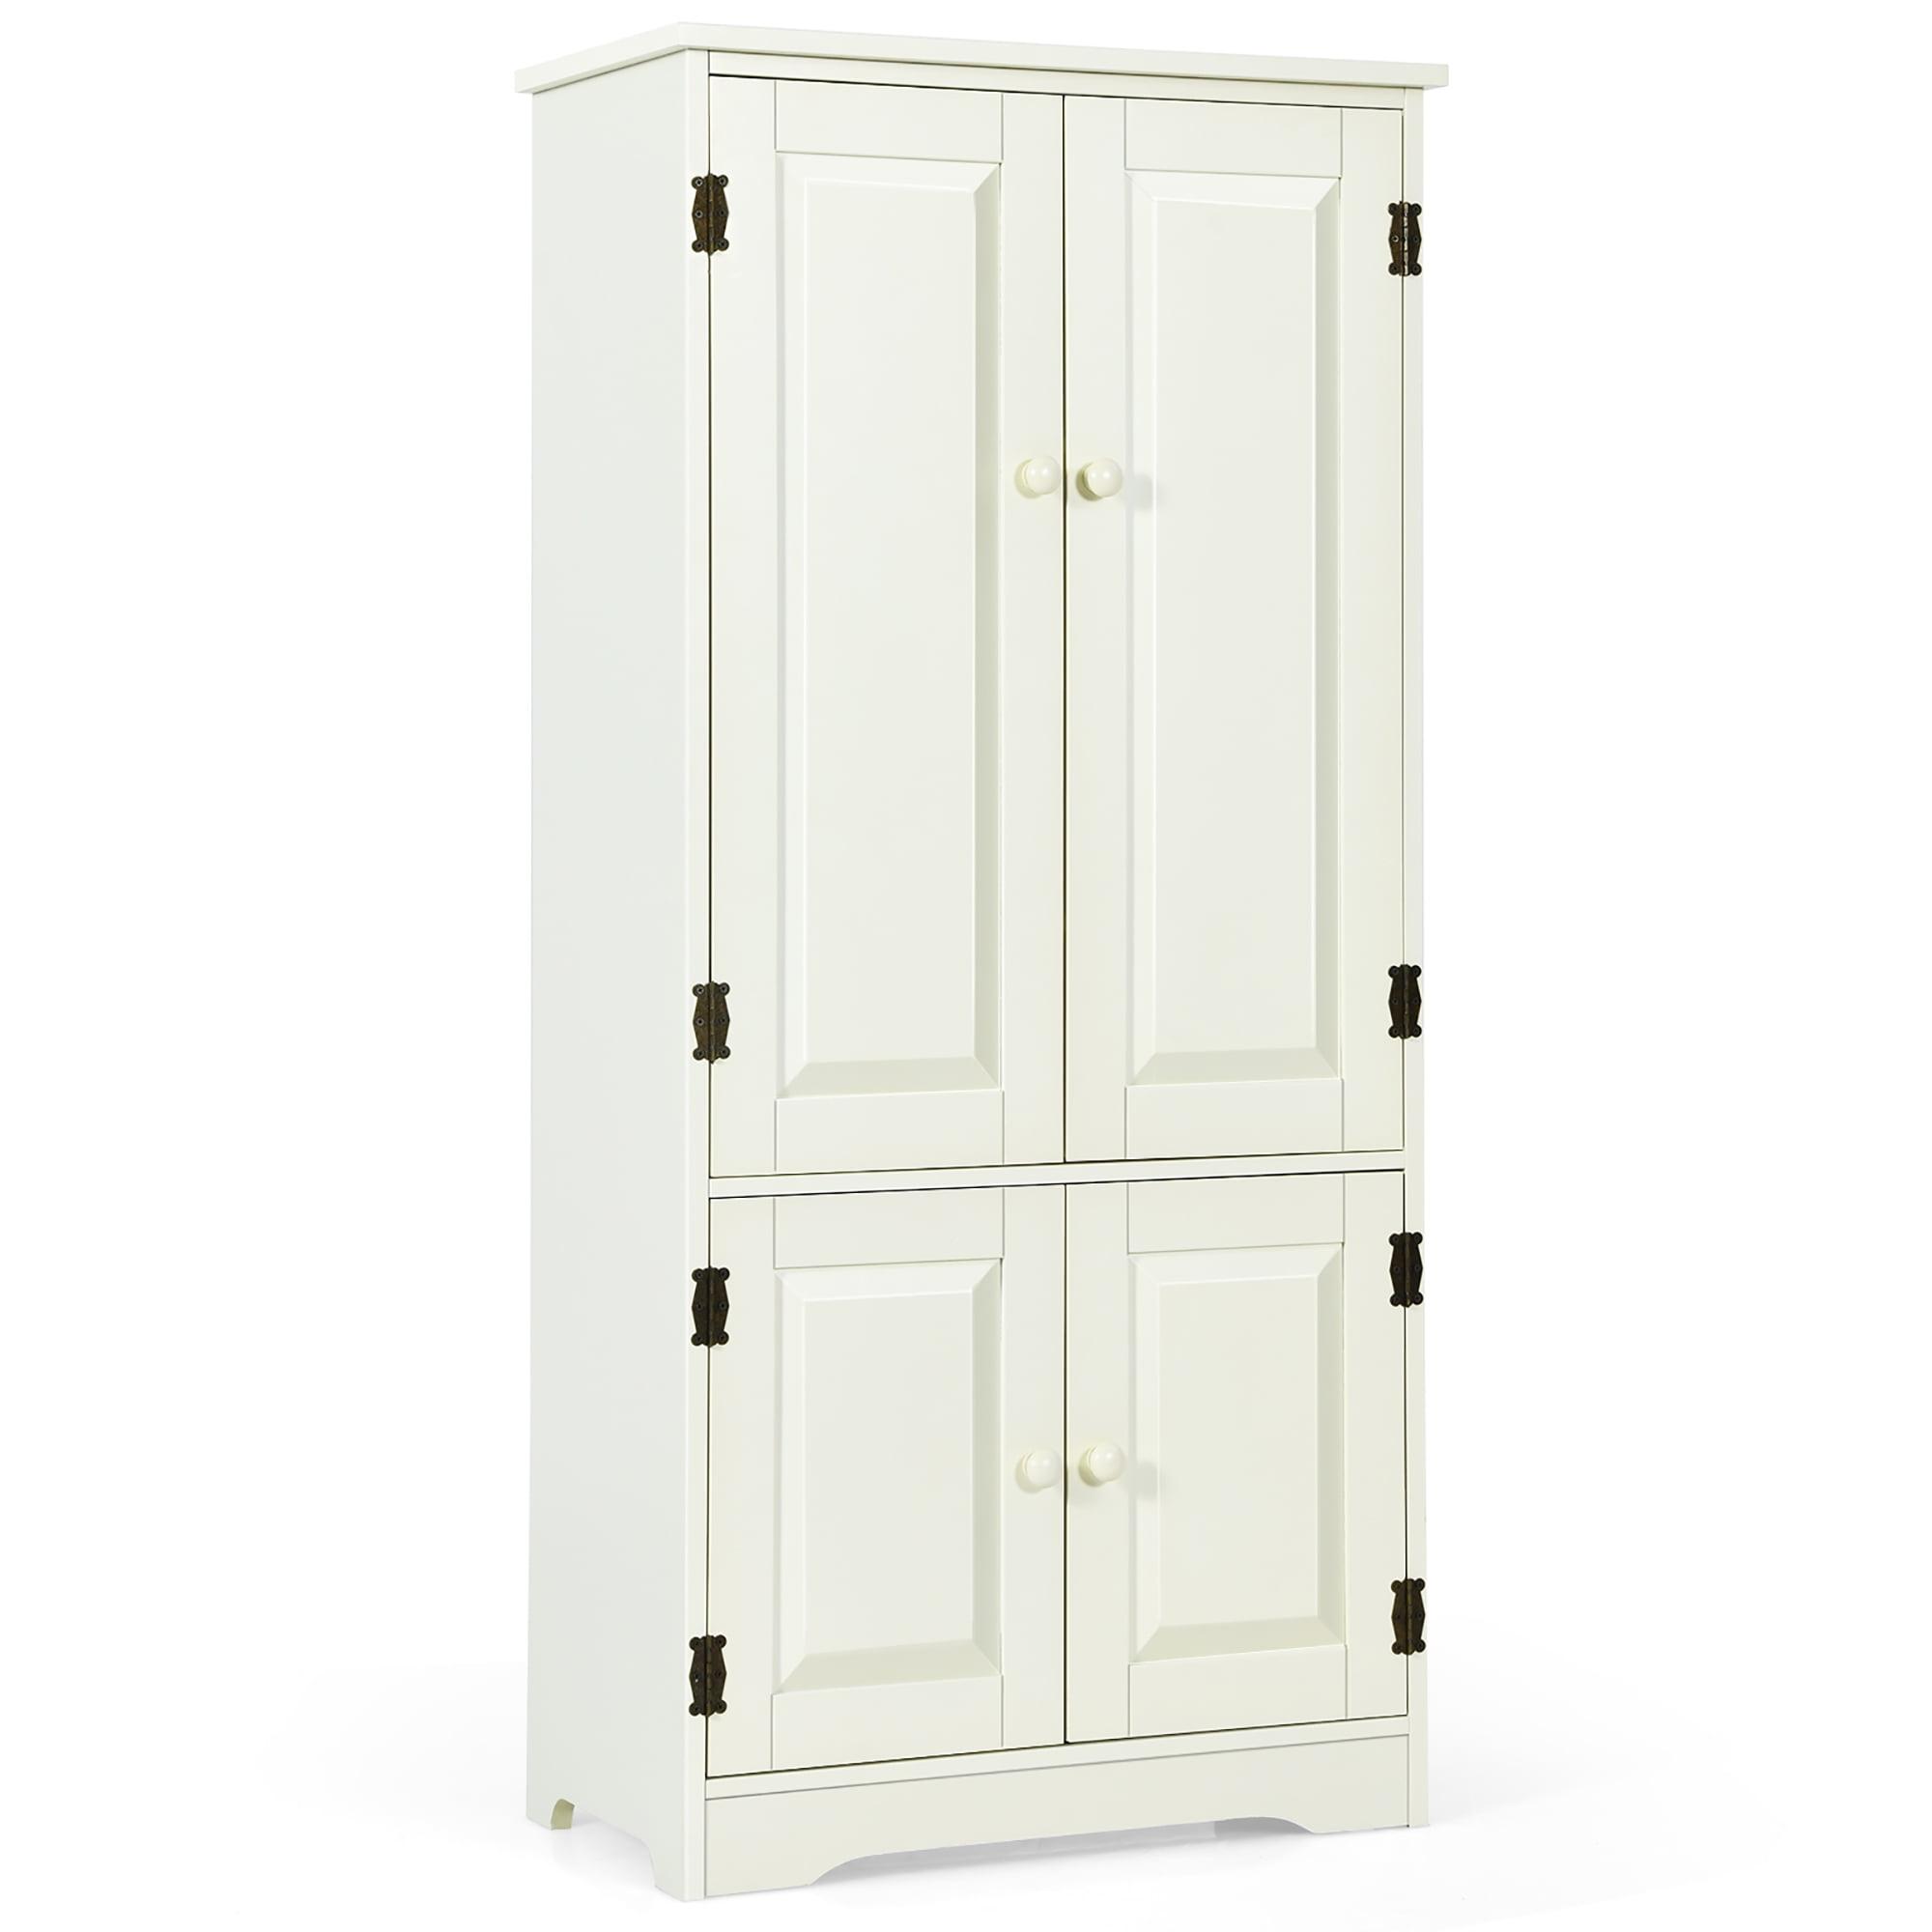 Antique White 2-Door Floor Cabinet with Adjustable Shelves